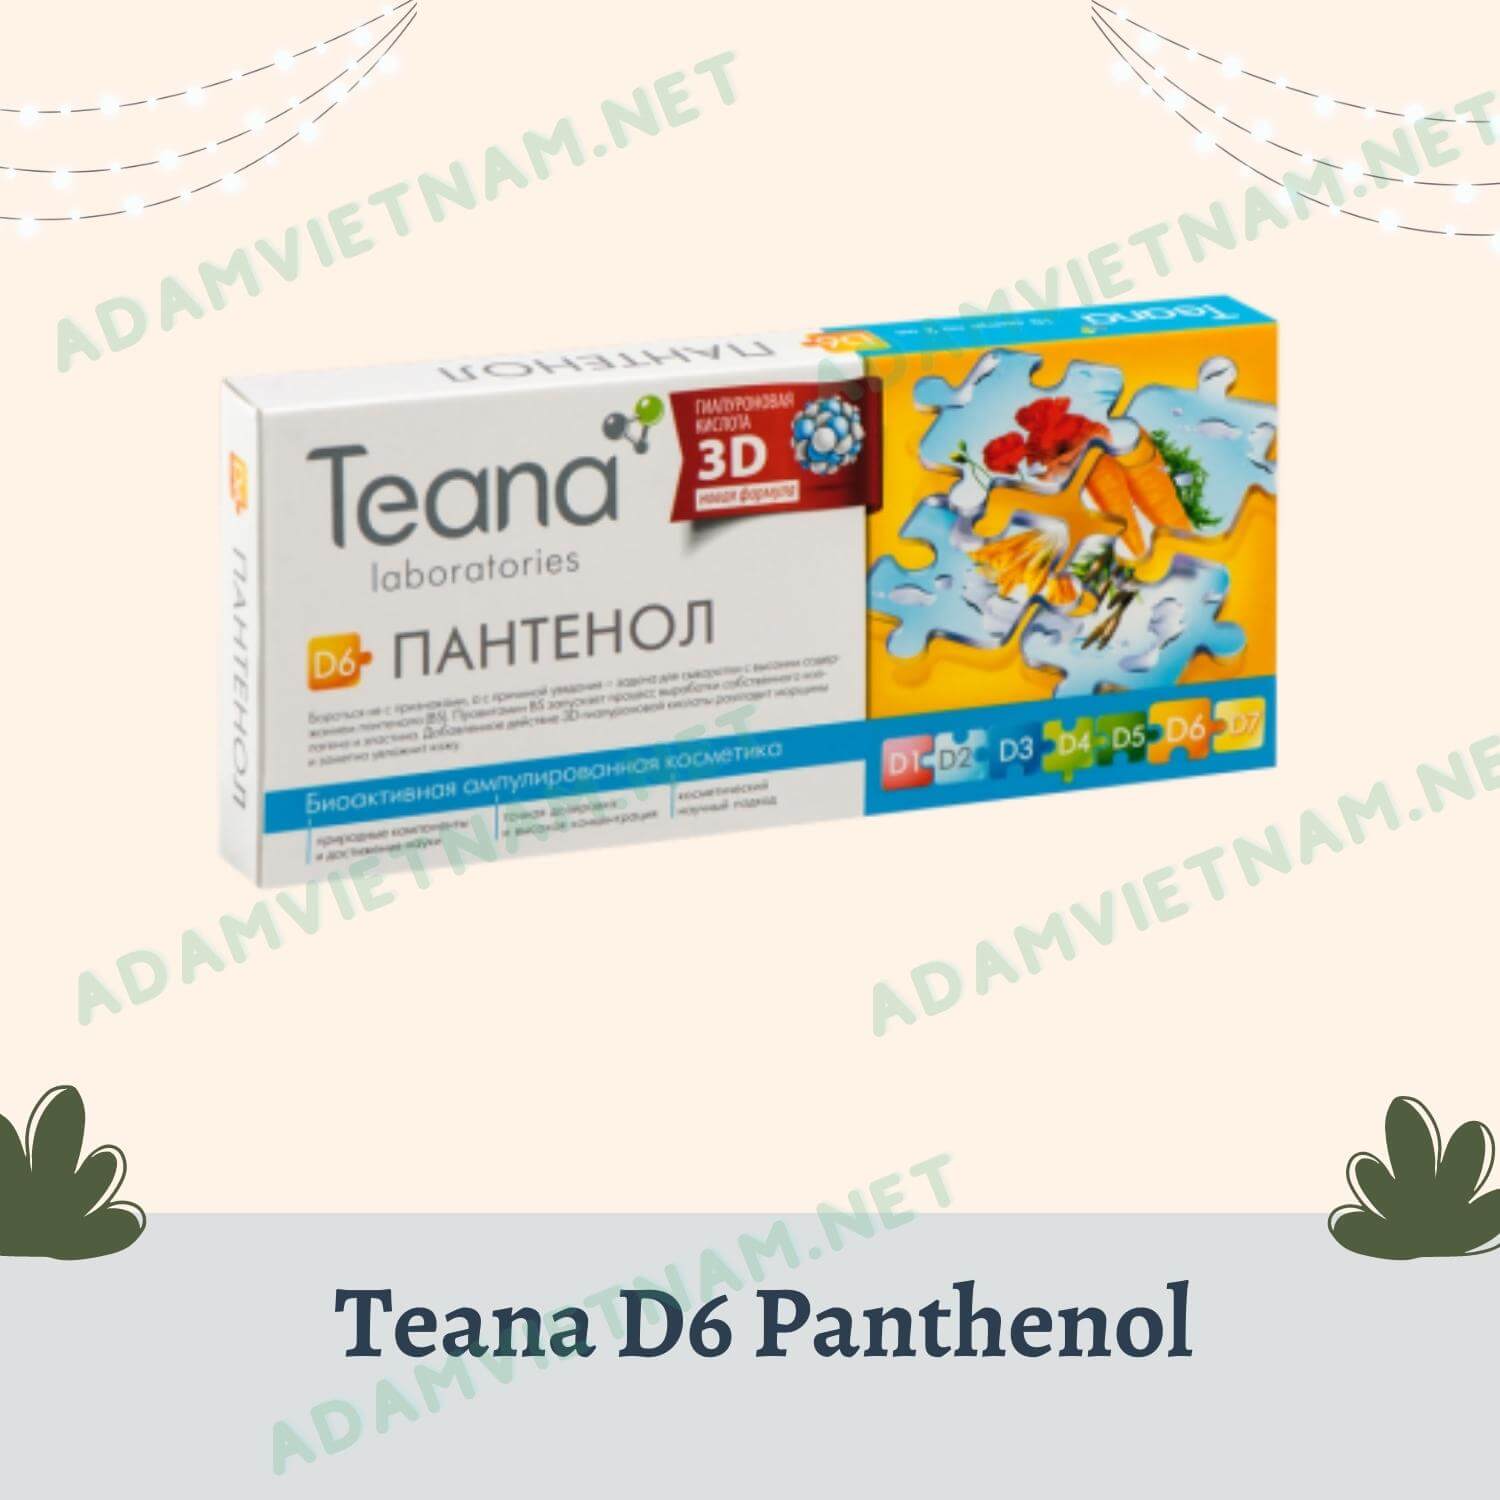 Serum Teana D6 Panthenol